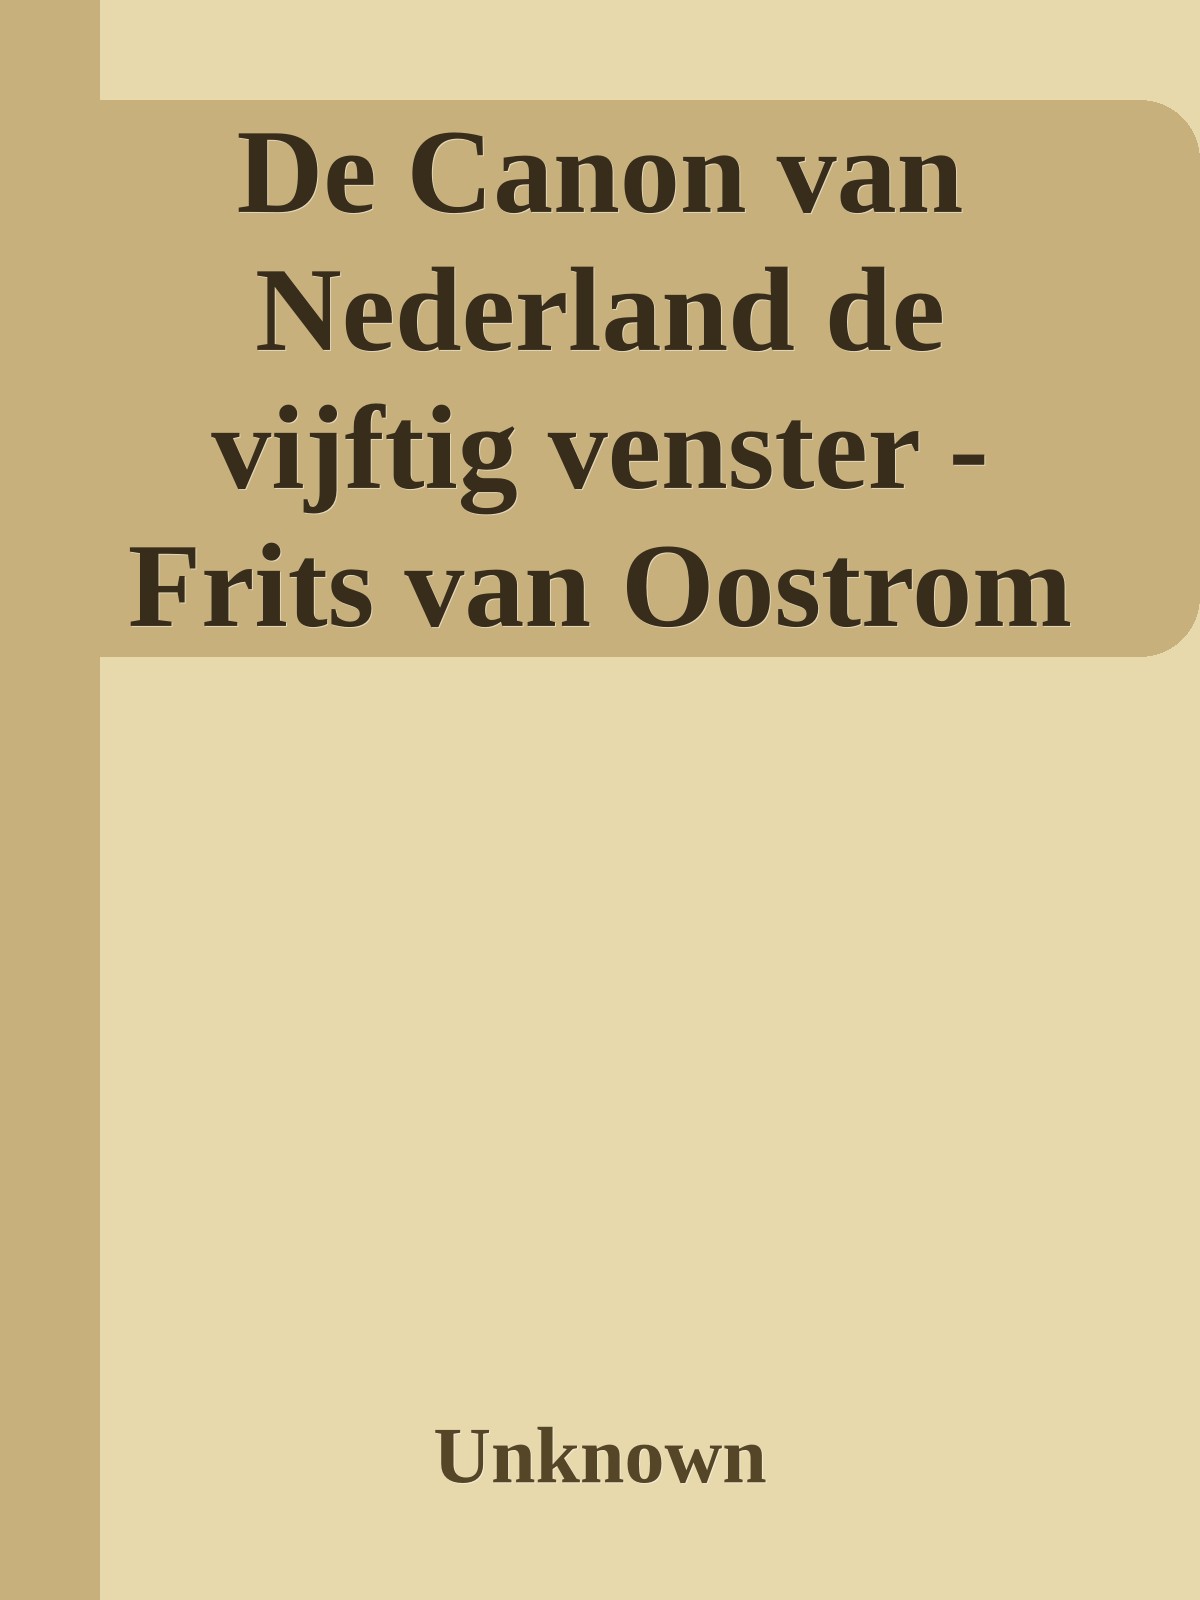 De Canon van Nederland de vijftig venster - Frits van Oostrom